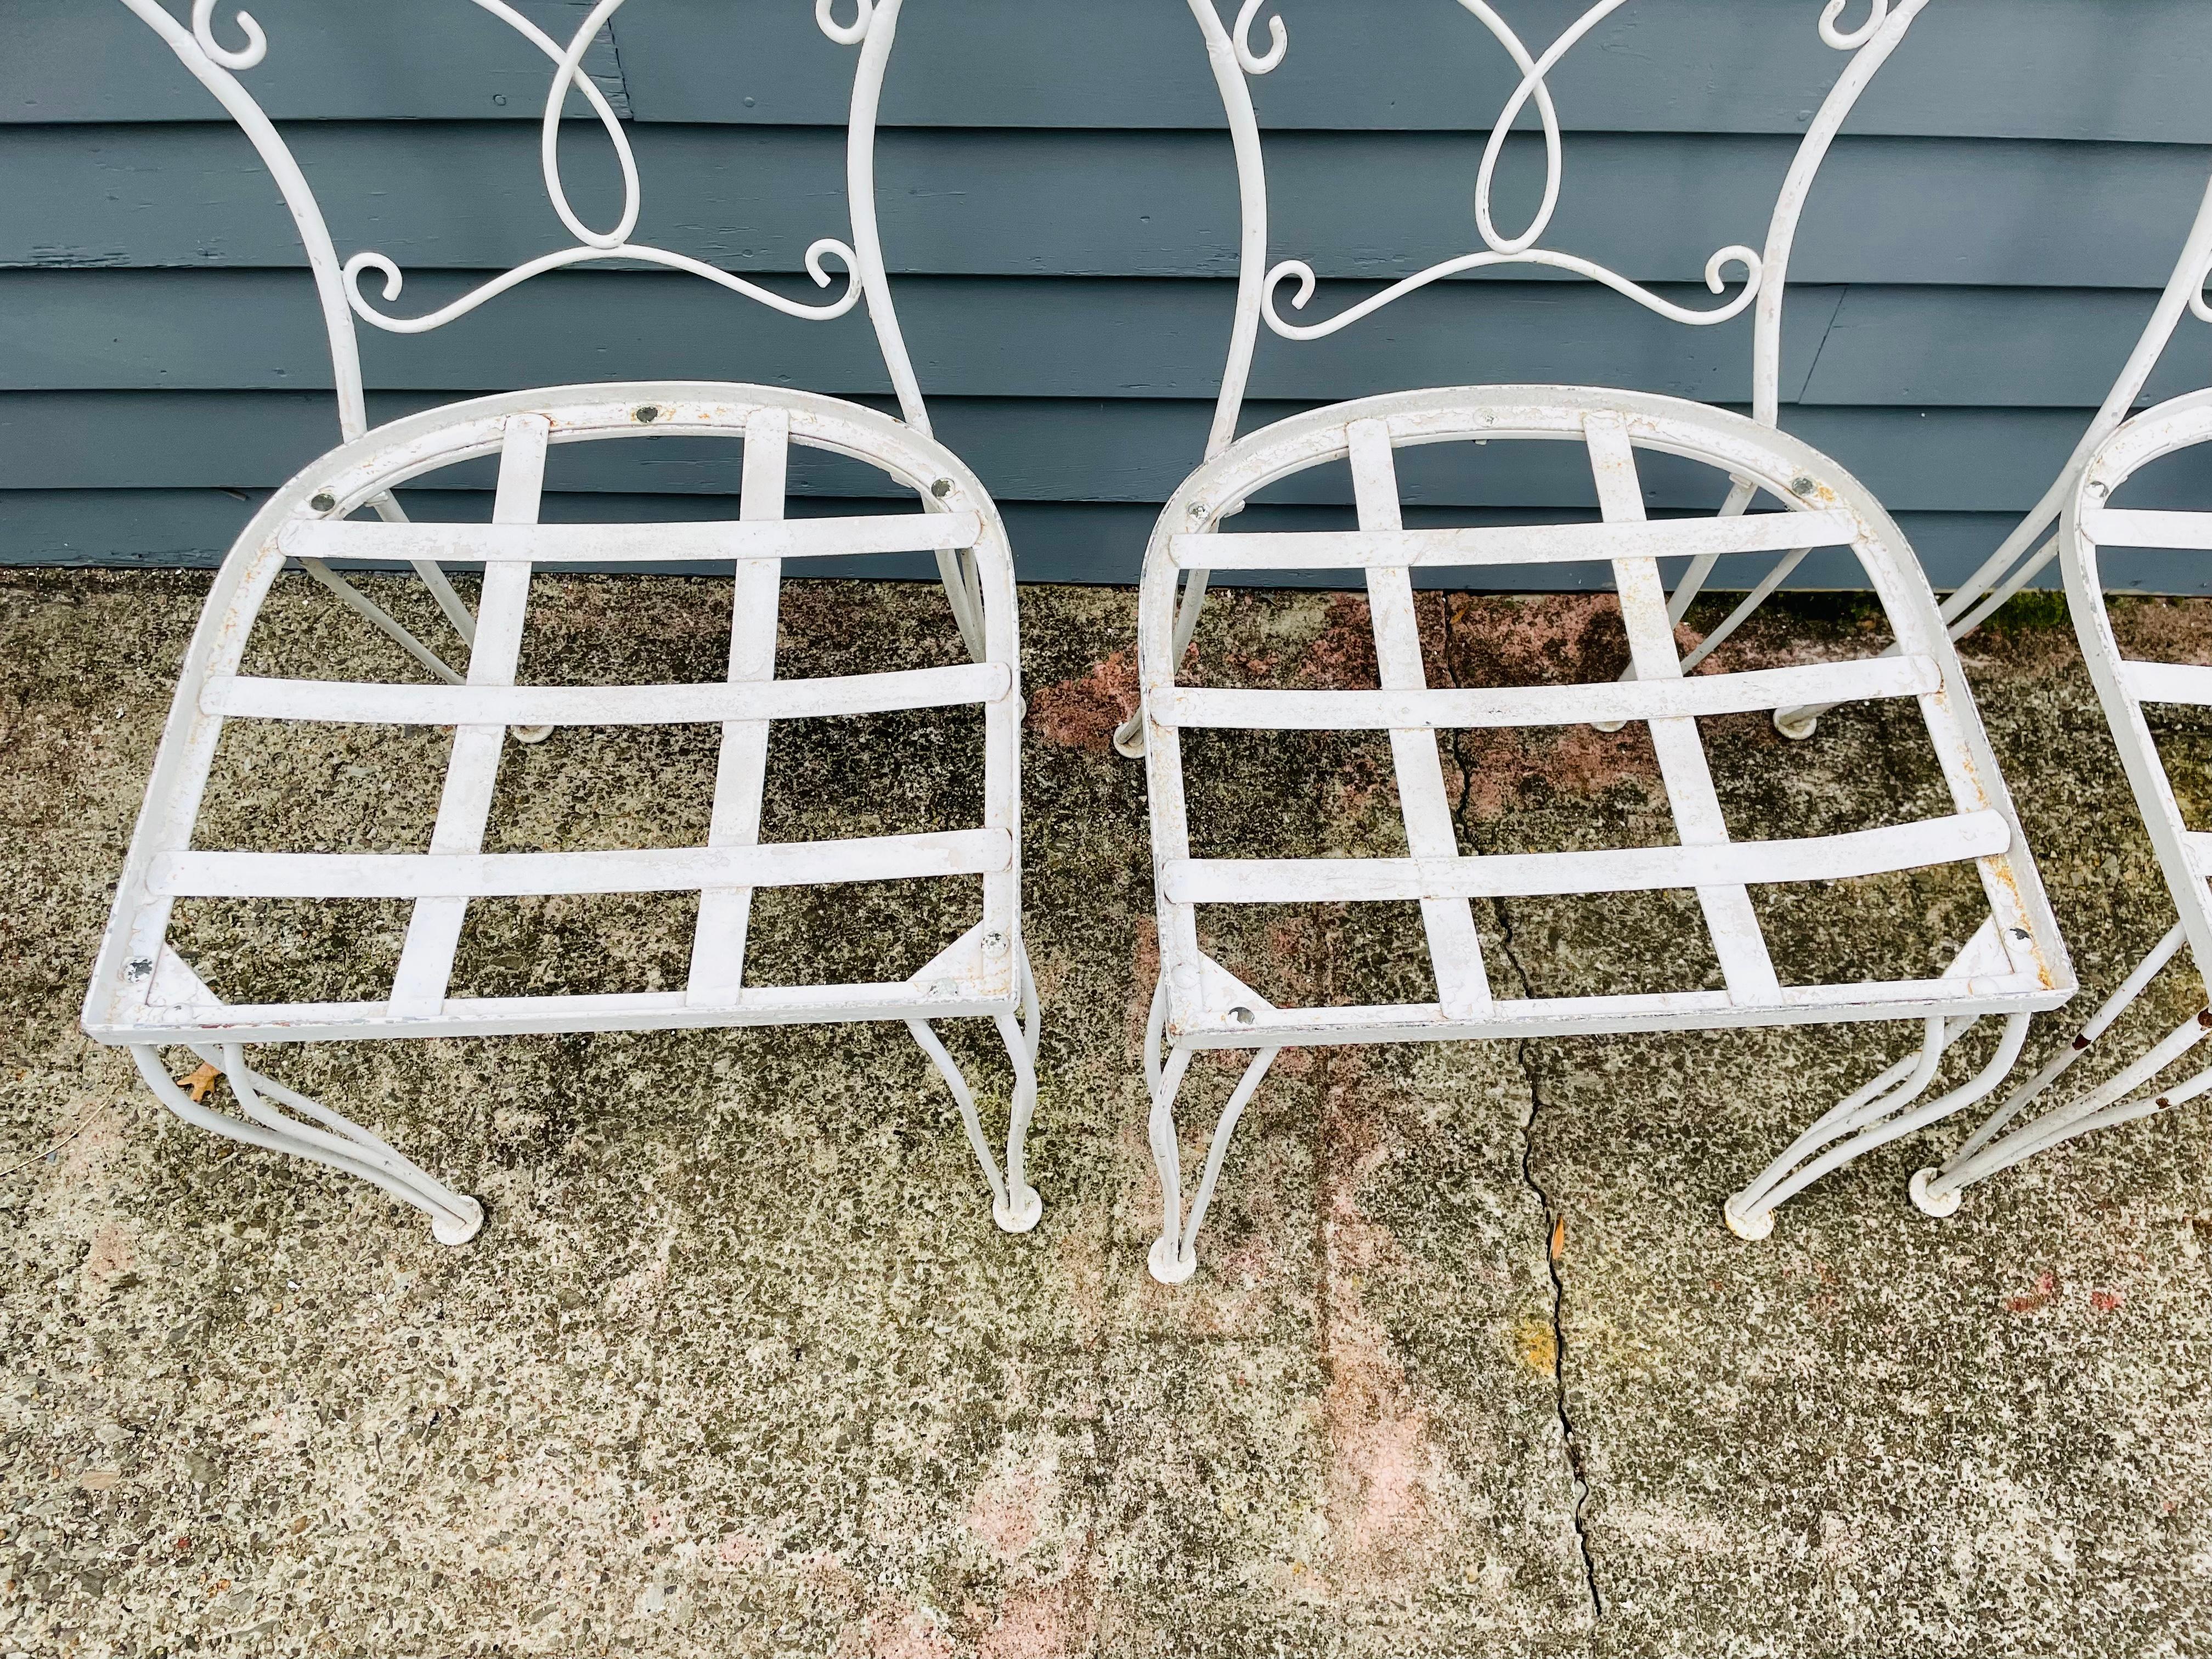 Voir d'autres meubles de patio en fer forgé Vintage Salterini en stock et prêts à être expédiés, y compris des ensembles complets de conversation en fer forgé vintage, des ensembles de salle à manger en fer forgé vintage Woodard dans des motifs